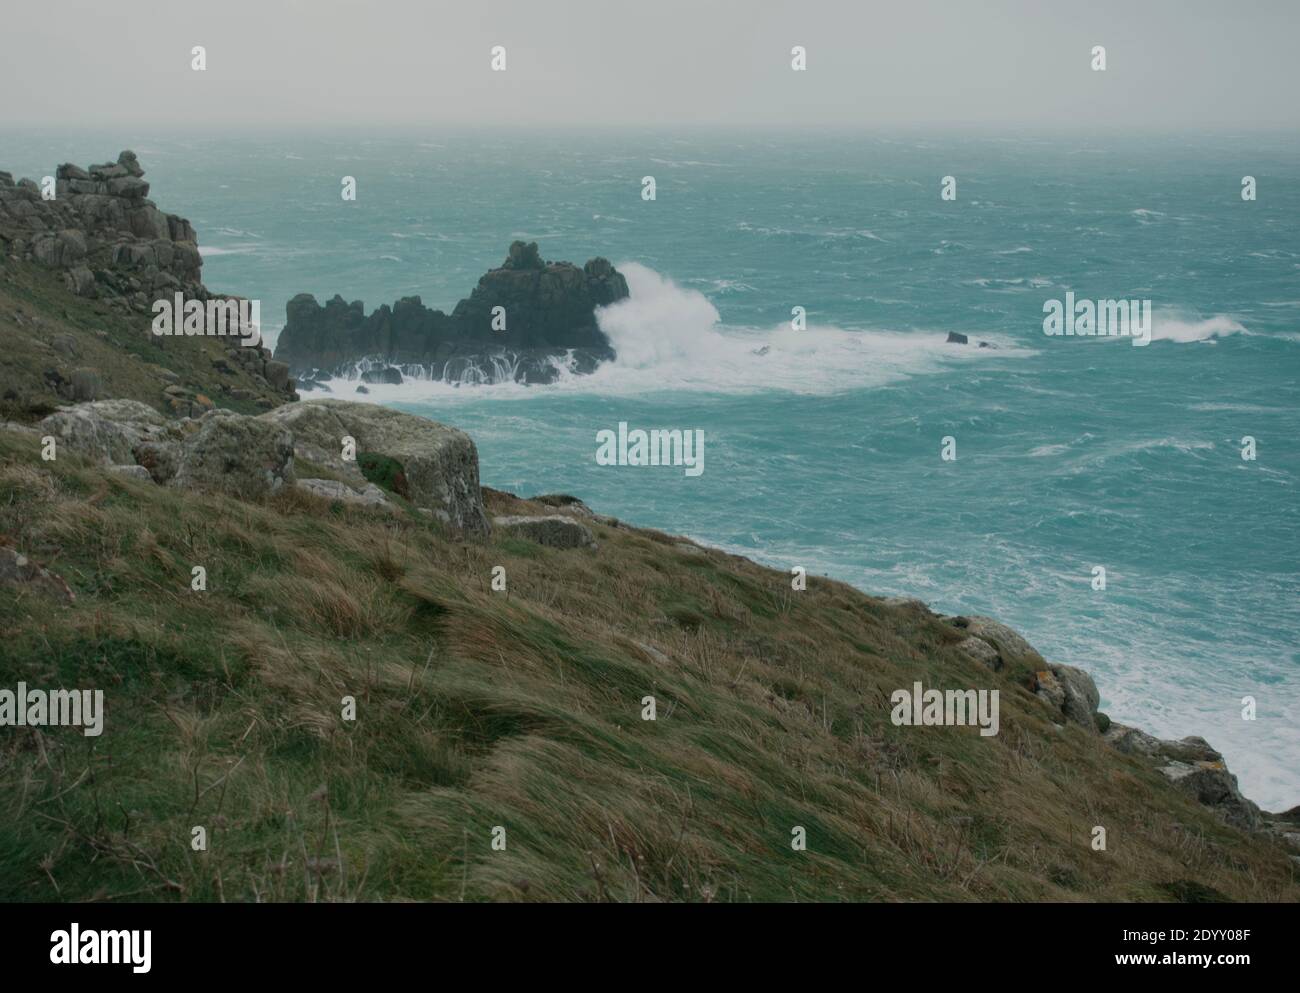 Mari burrasdi e onde dell'oceano Atlantico che si infrangono sulle rocce a Lands End Cornwall, Regno Unito dopo che i venti della forza delle balle di Storm Bella si propagano attraverso la costa Foto Stock